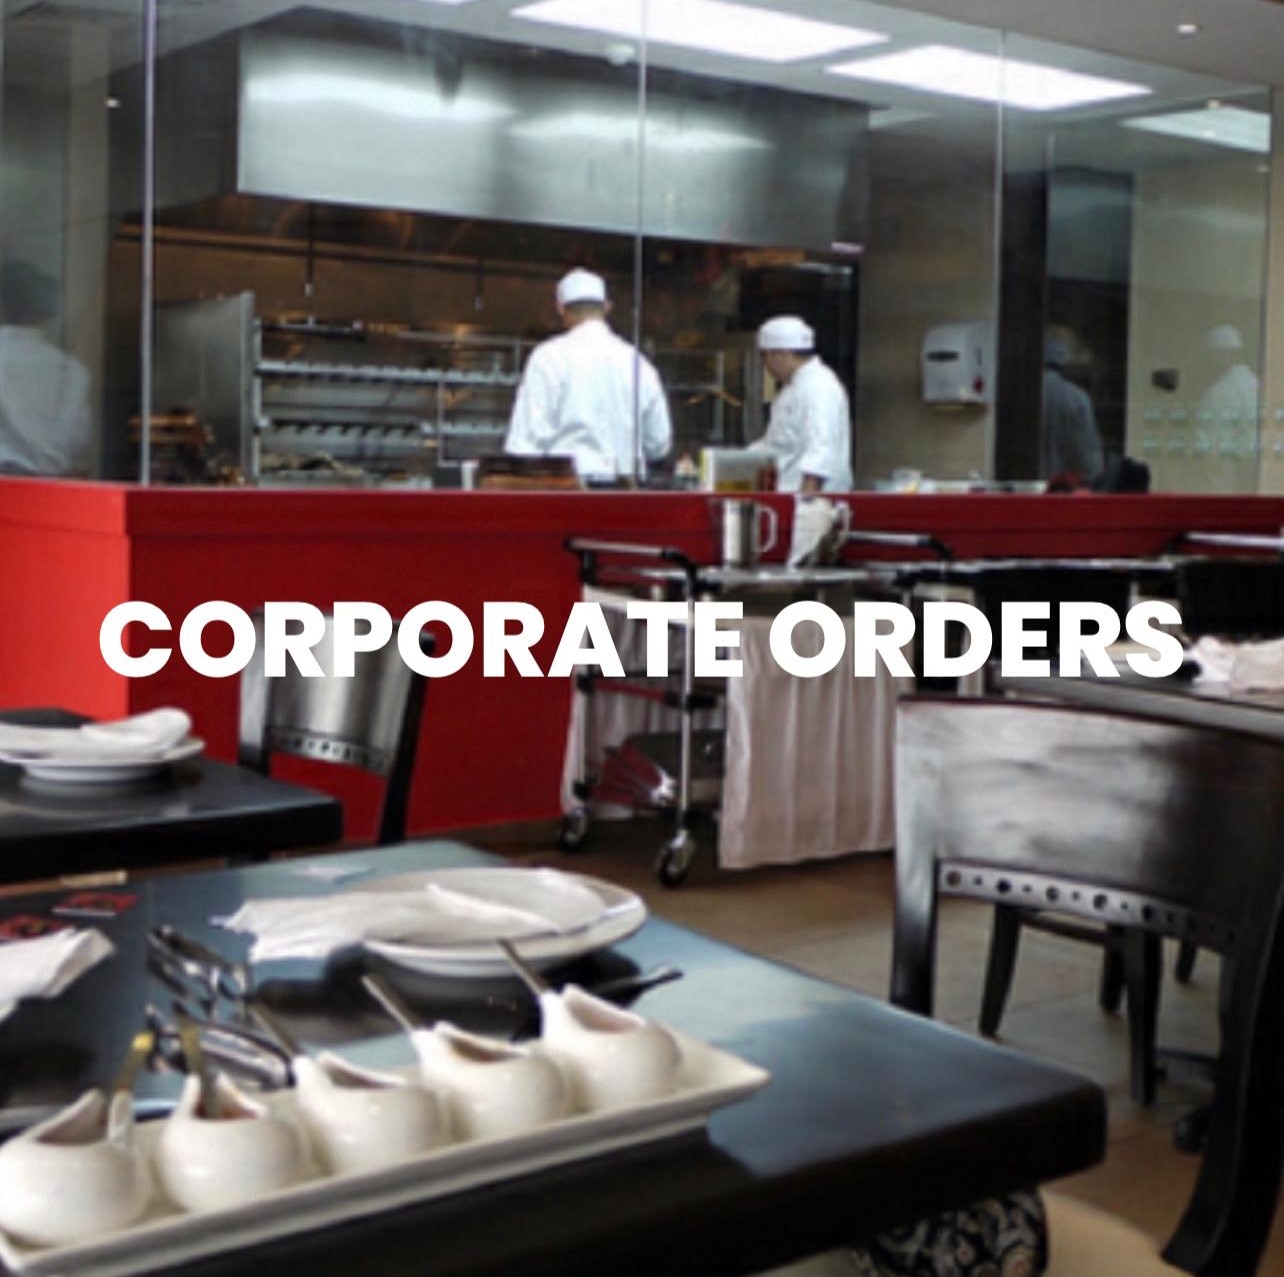 Corporate Orders